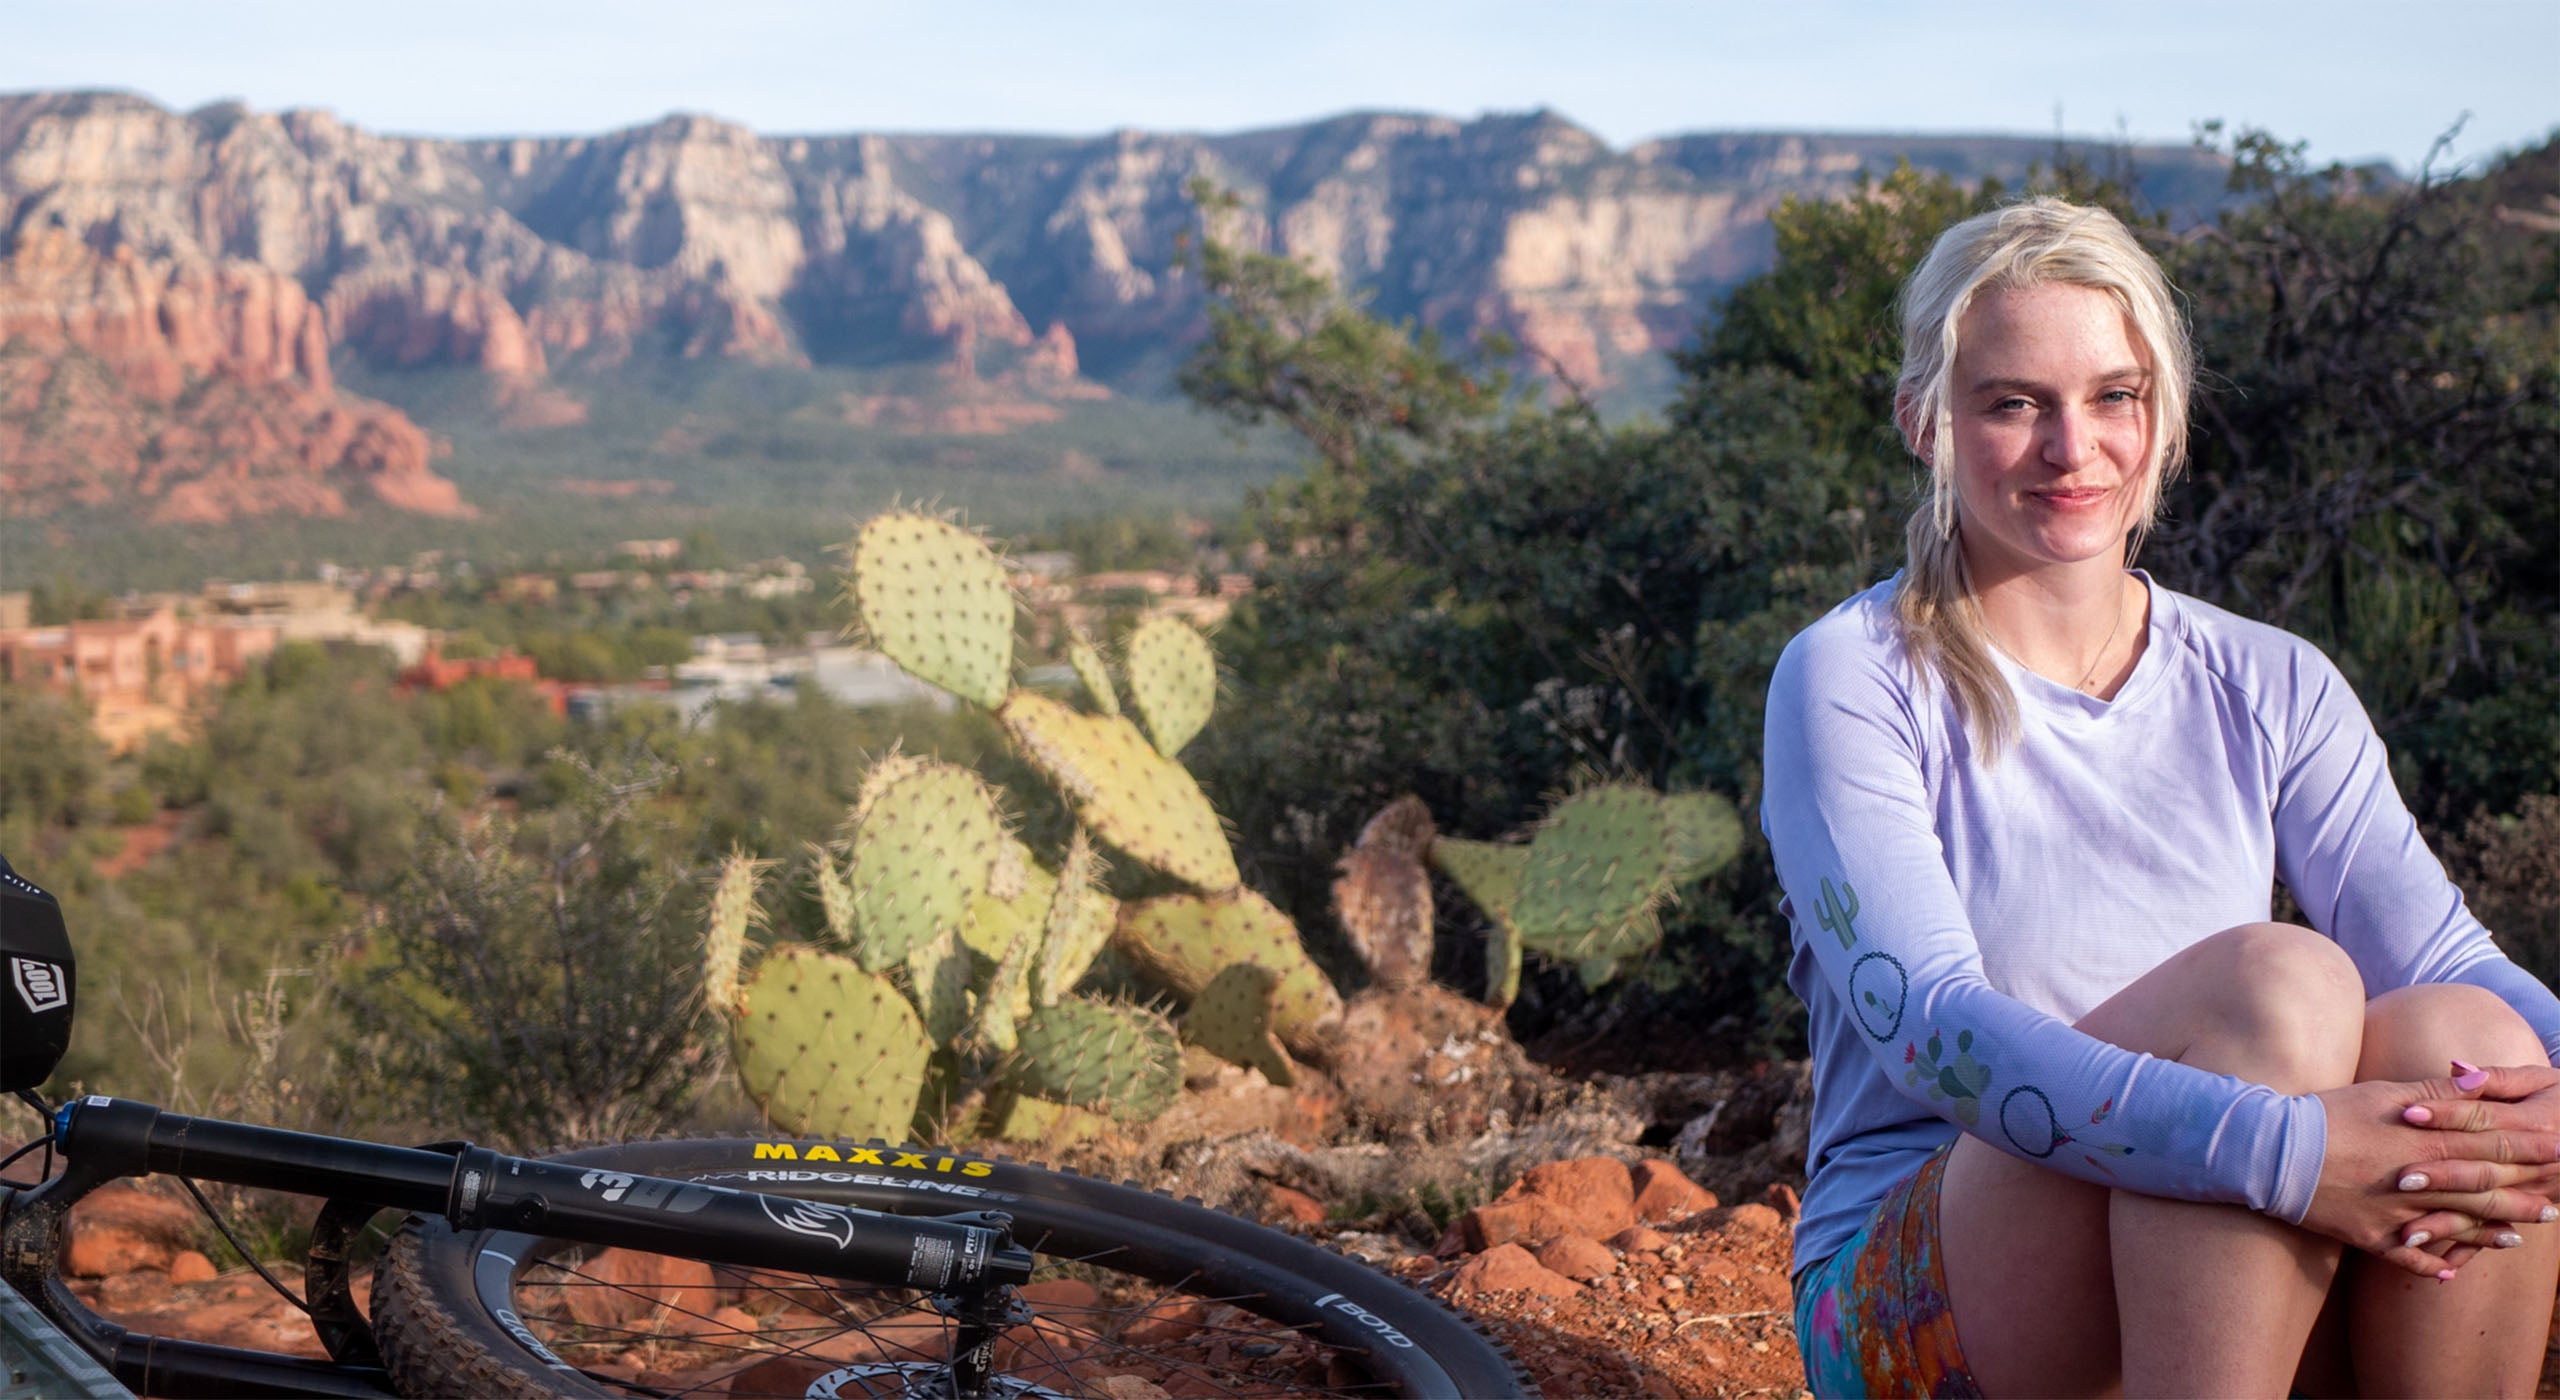 Moxie Cycling Company– Moxie Cycling: Bike Jerseys, Bike Shorts & Bike Pants  Made for Women